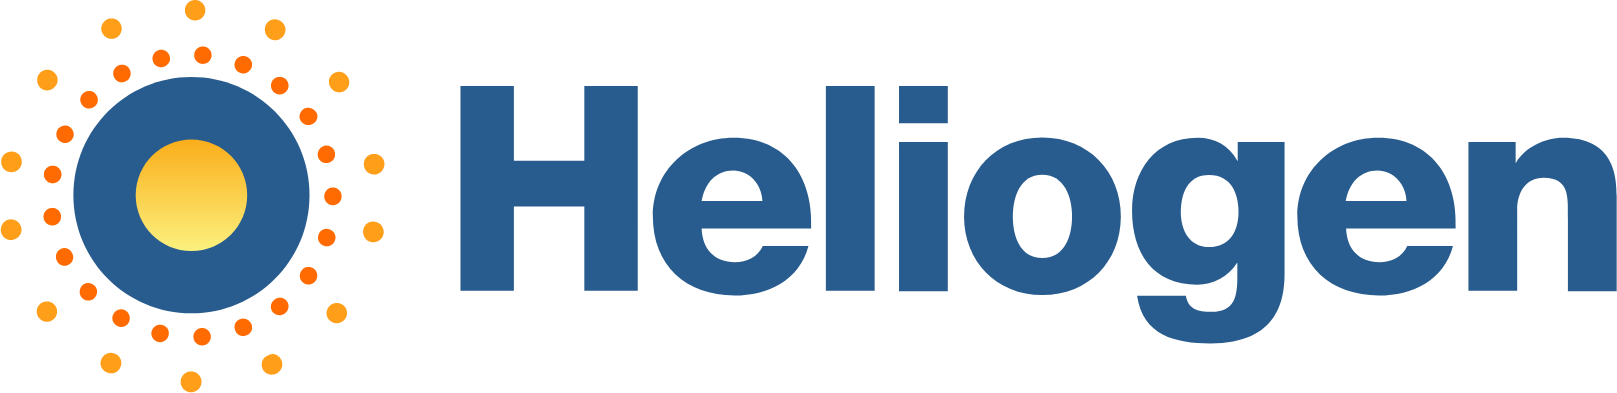 Heliogen logo large (transparent PNG)